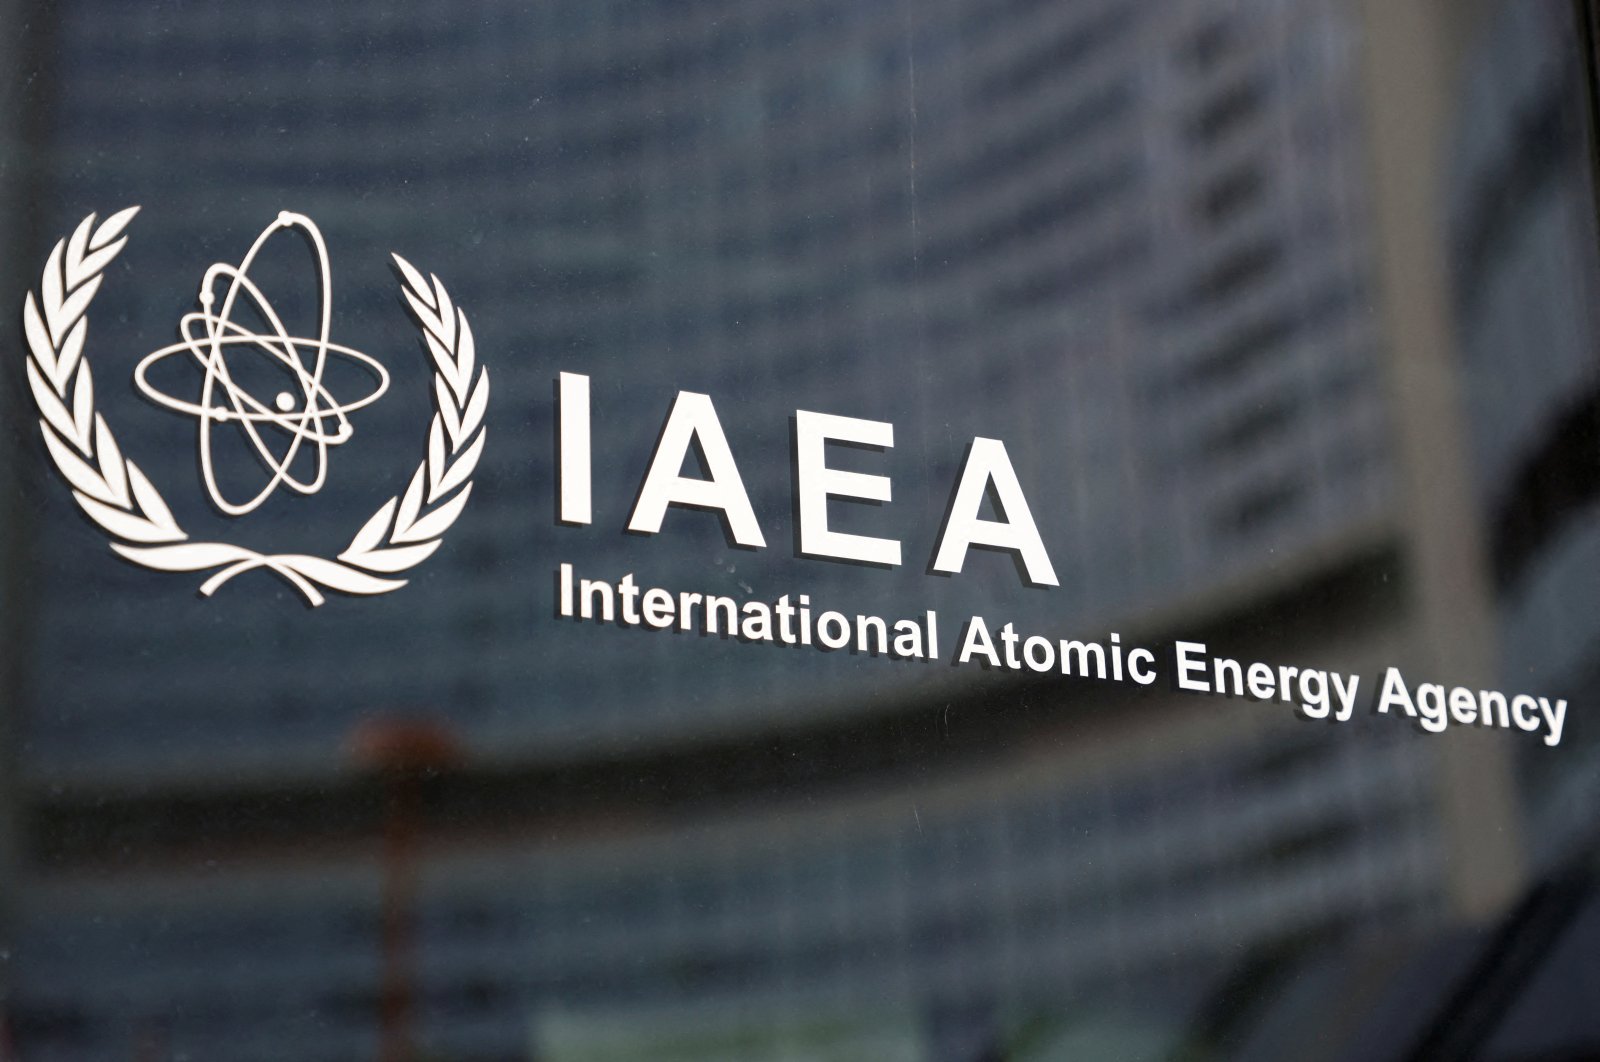 2,5 ton uranium hilang dari situs Libya: pengawas nuklir PBB